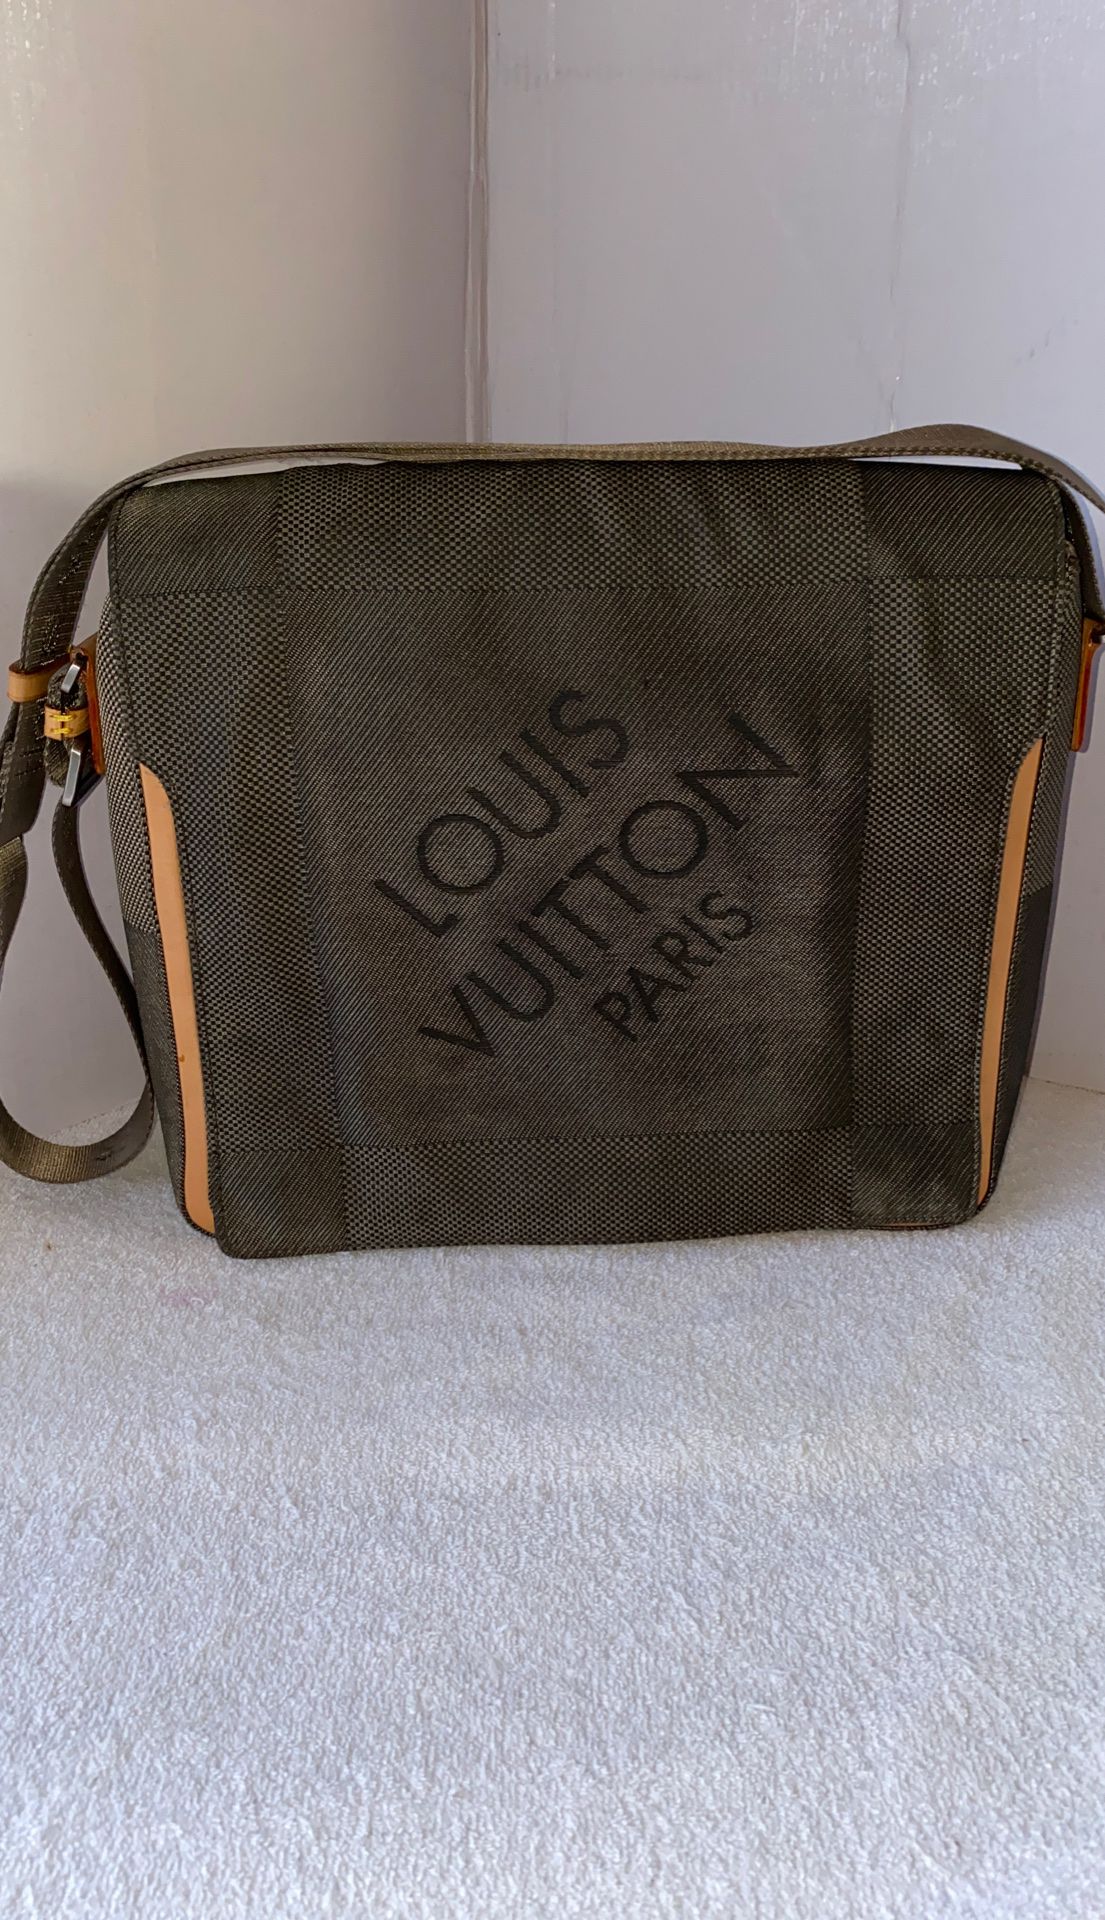 Vintage Louis Vuitton messenger bag